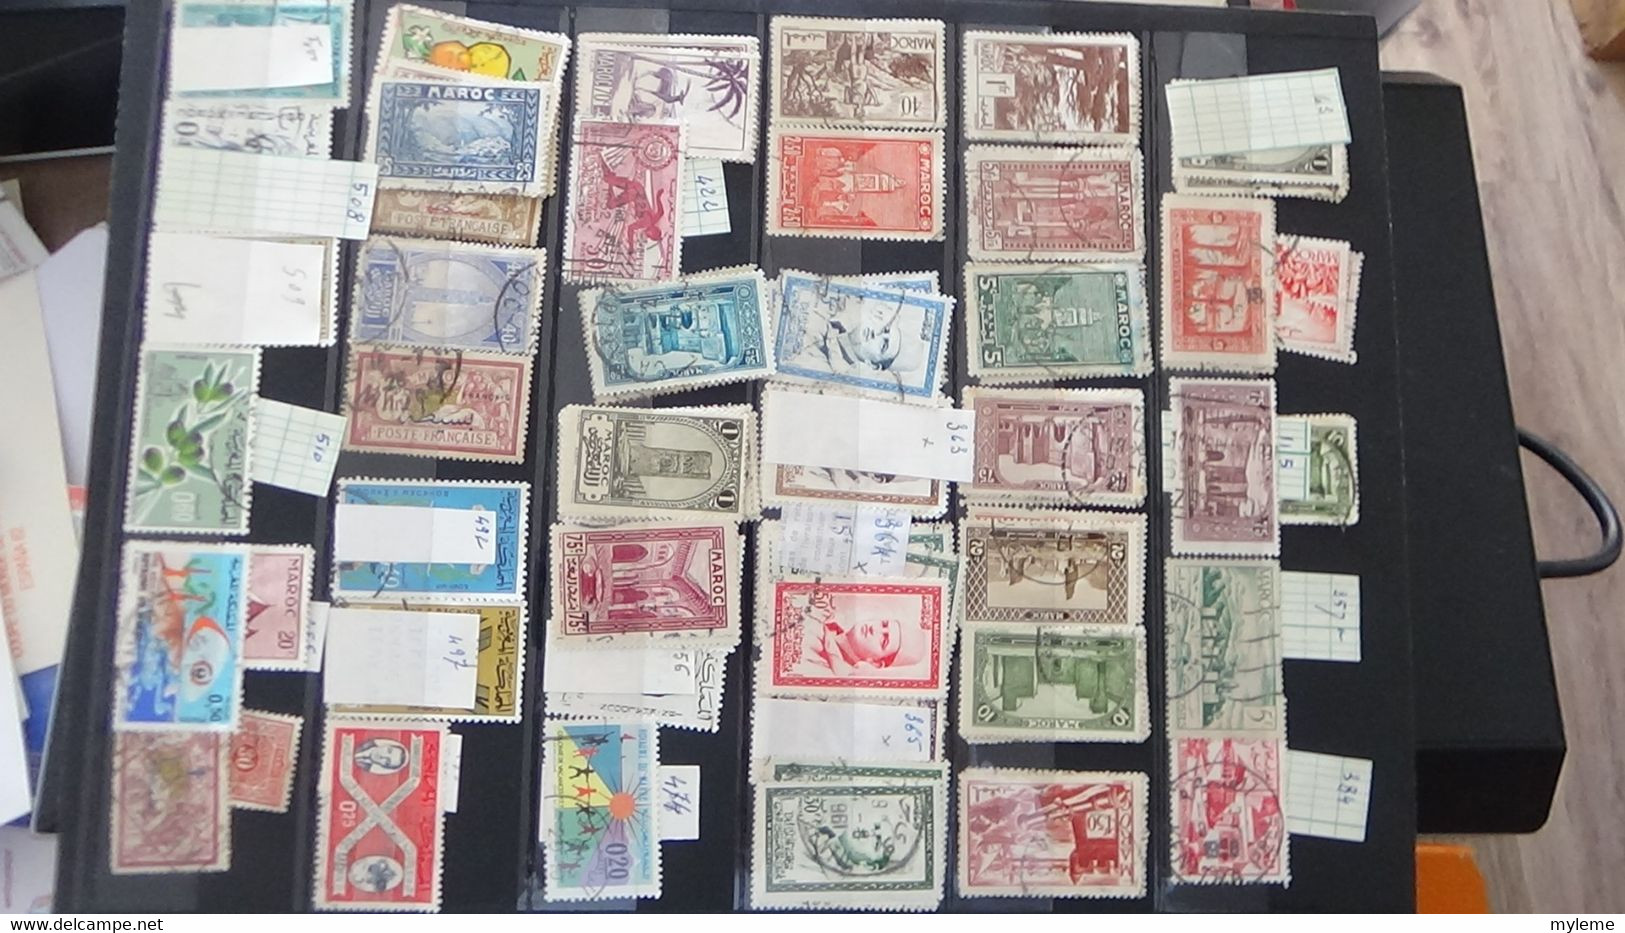 AN72 Collection de timbres oblitérés de divers pays + Comores N° 104A ** cote 150 euros  A saisir !!!